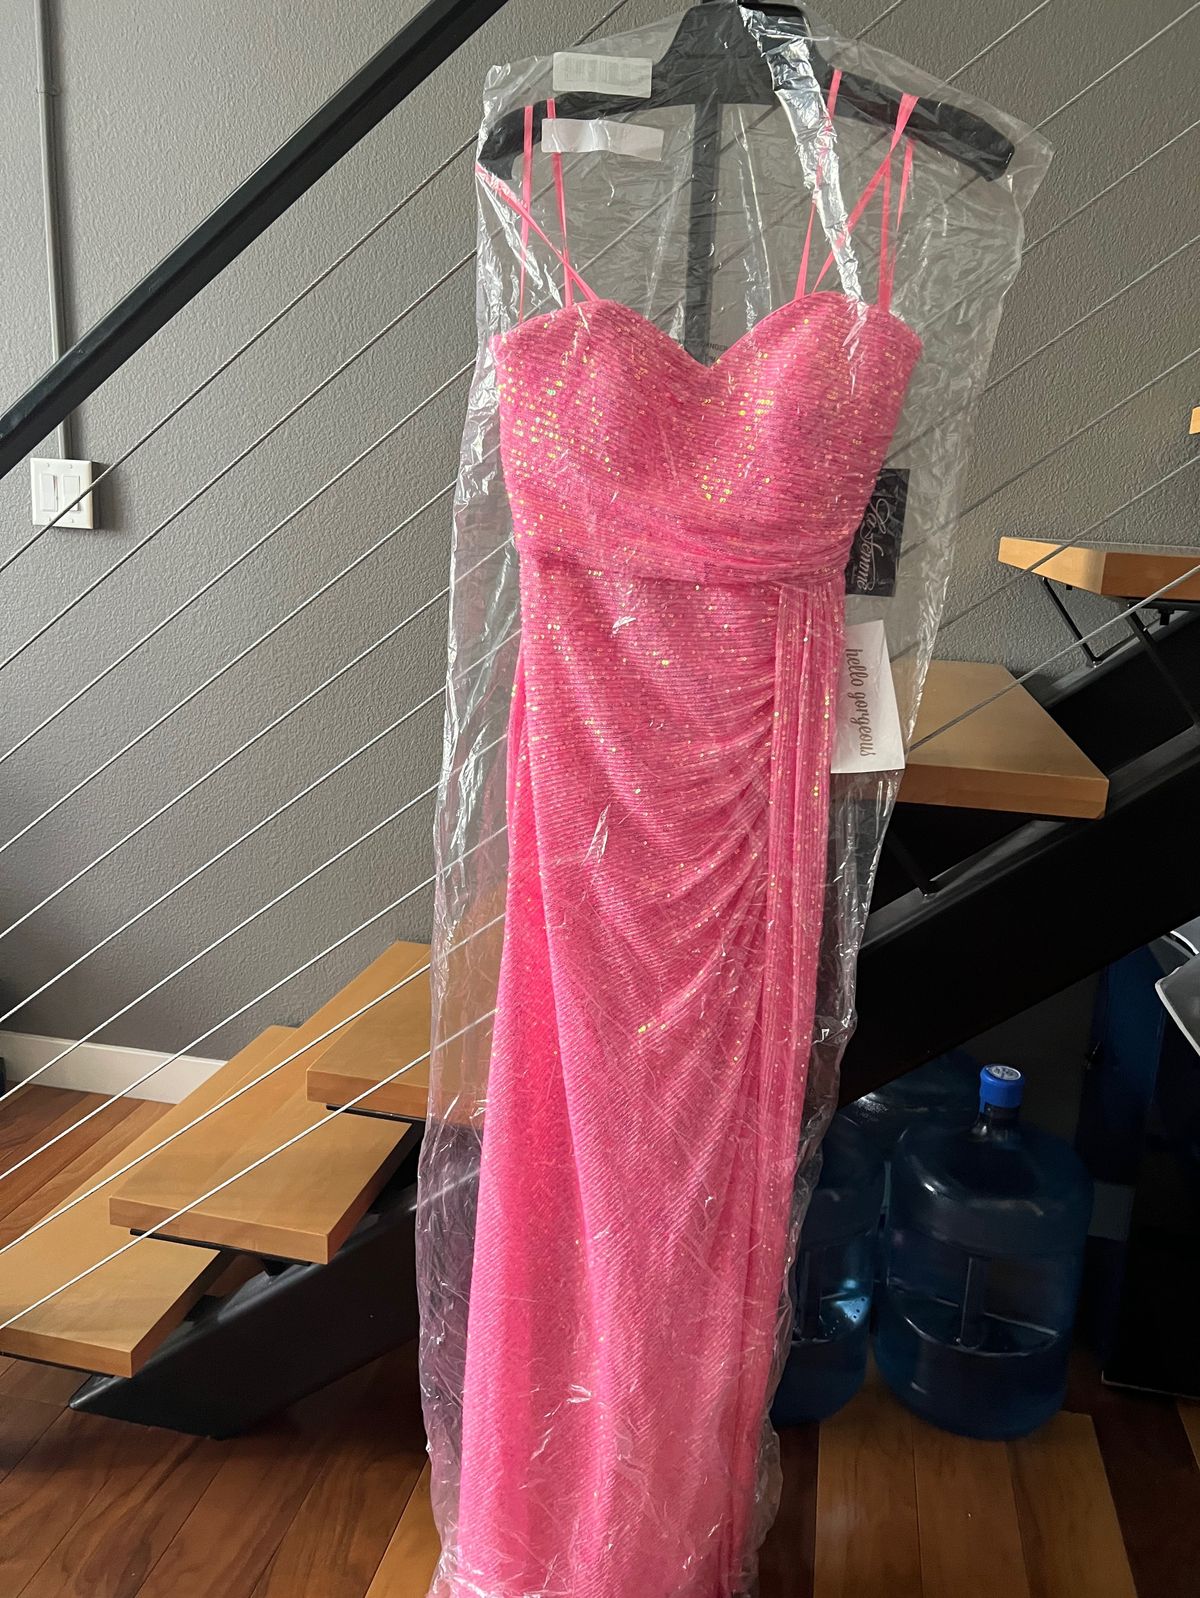 La Femme Size 6 Prom Pink Side Slit Dress on Queenly